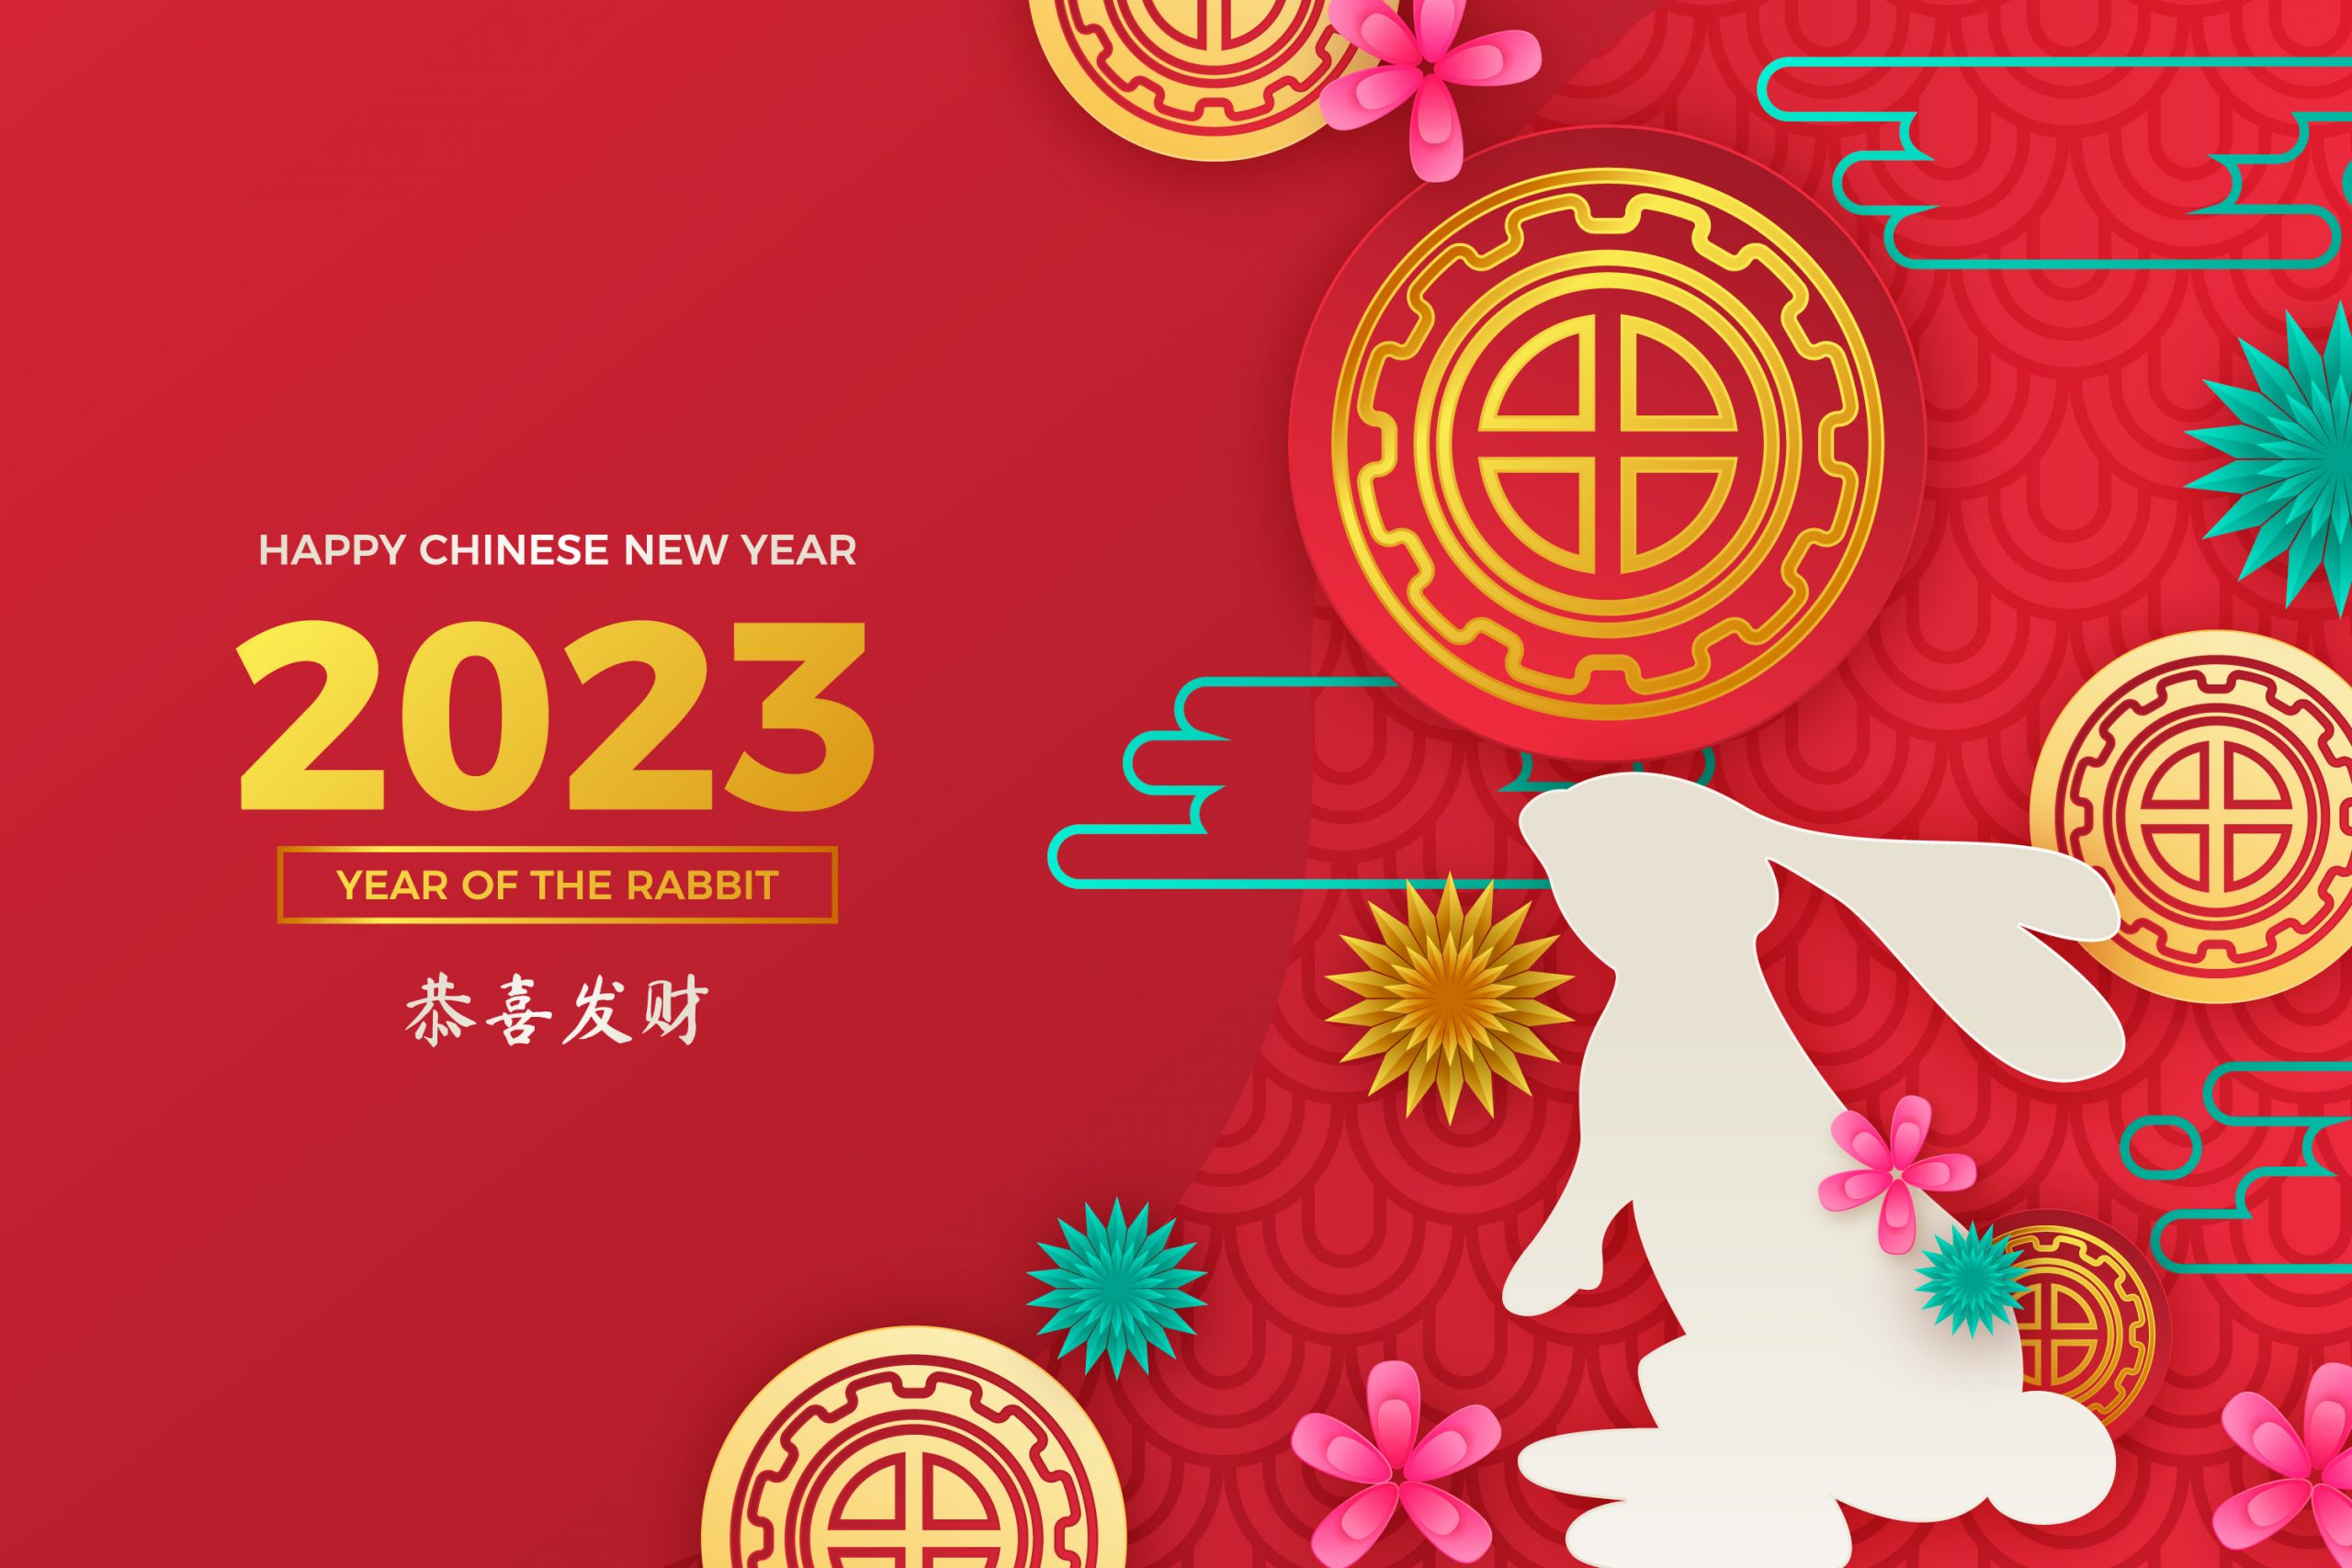 пабг китайский новый год фото 54